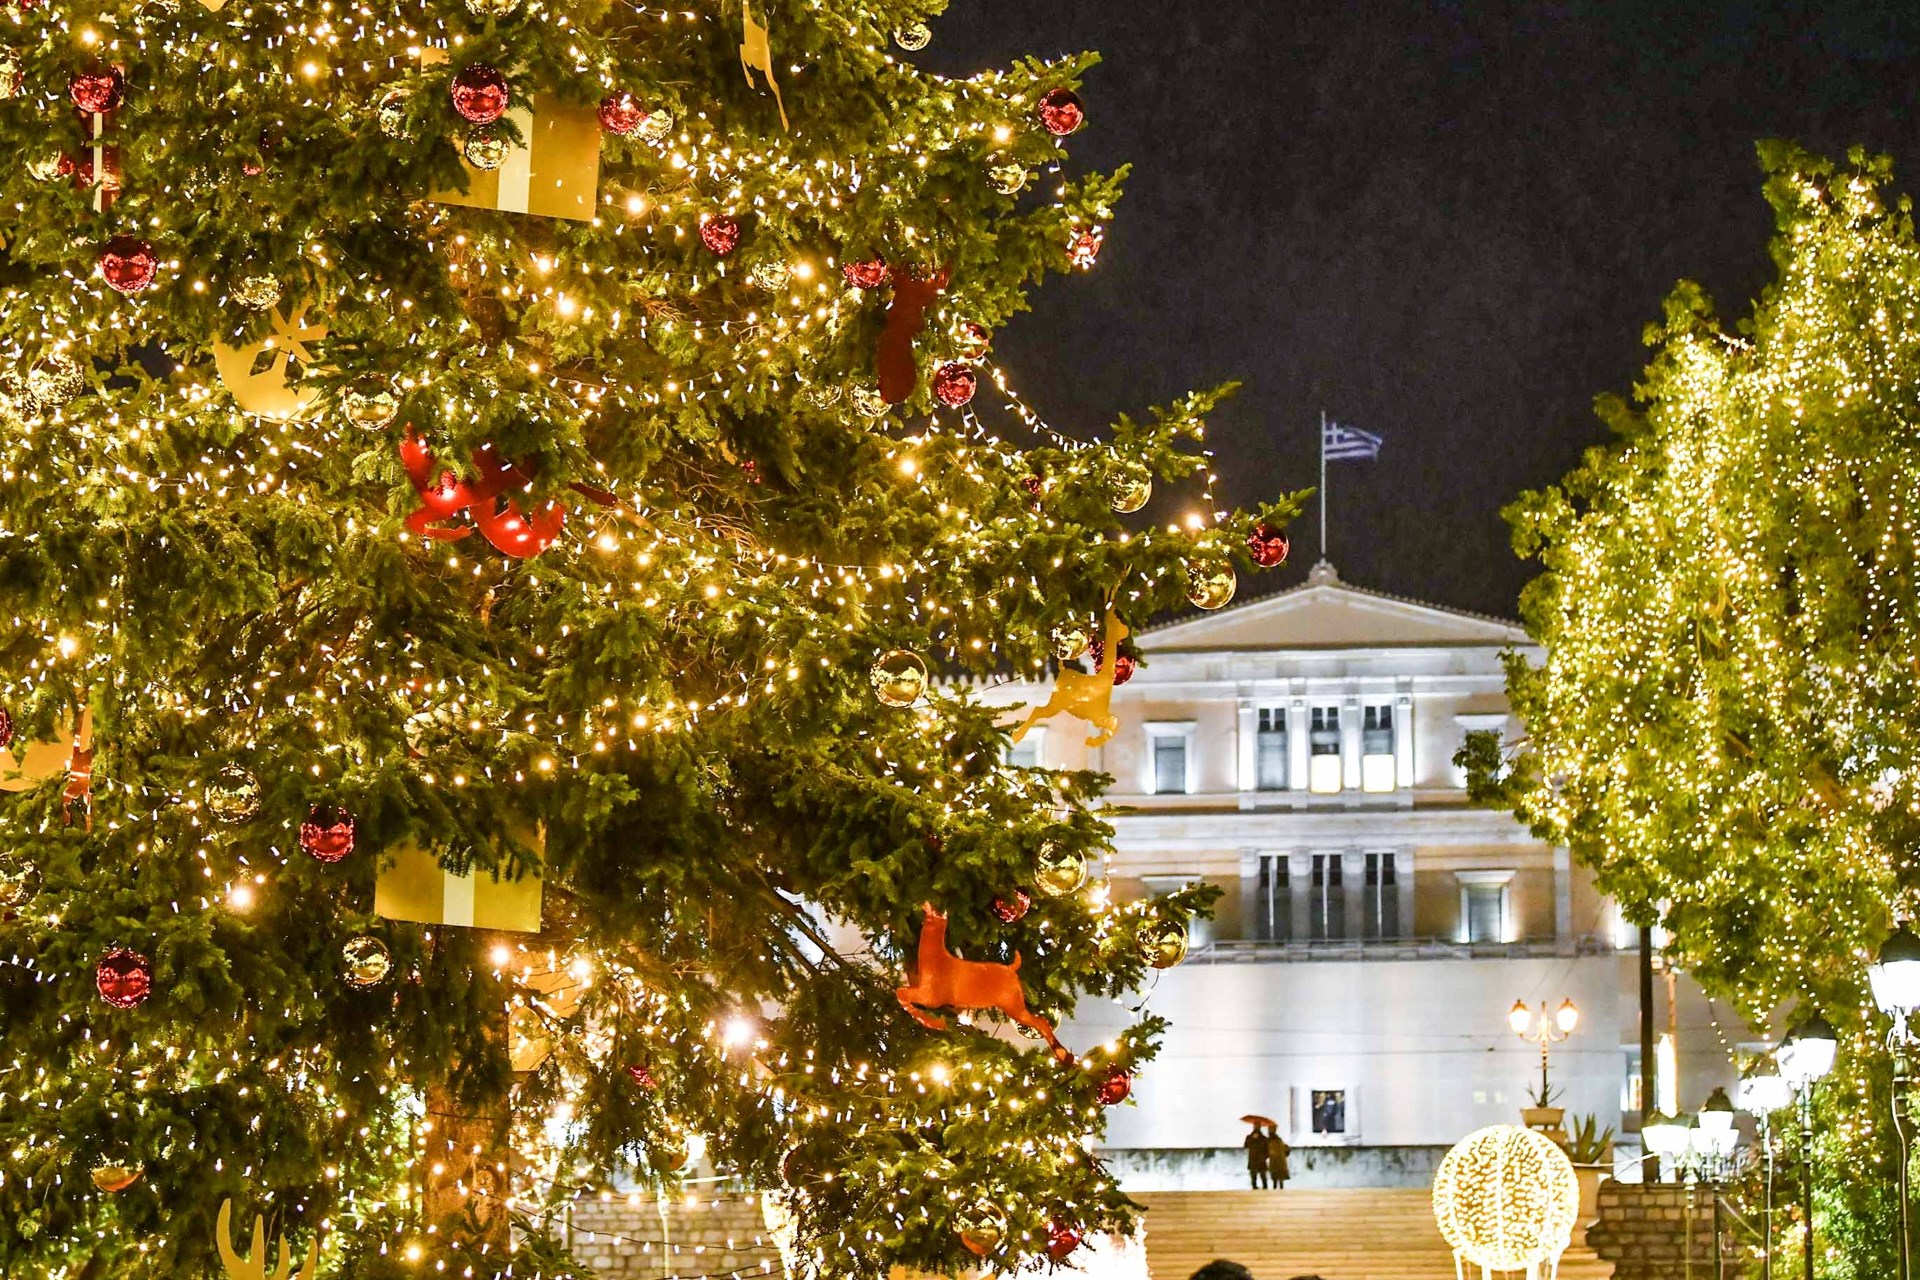 Μια Αθηναϊκή χριστουγεννιάτικη ιστορία – Ο Δήμος Αθηναίων ανάβει το Χριστουγεννιάτικο δέντρο, αλλιώς… – ΦΩΤΟ – ΒΙΝΤΕΟ